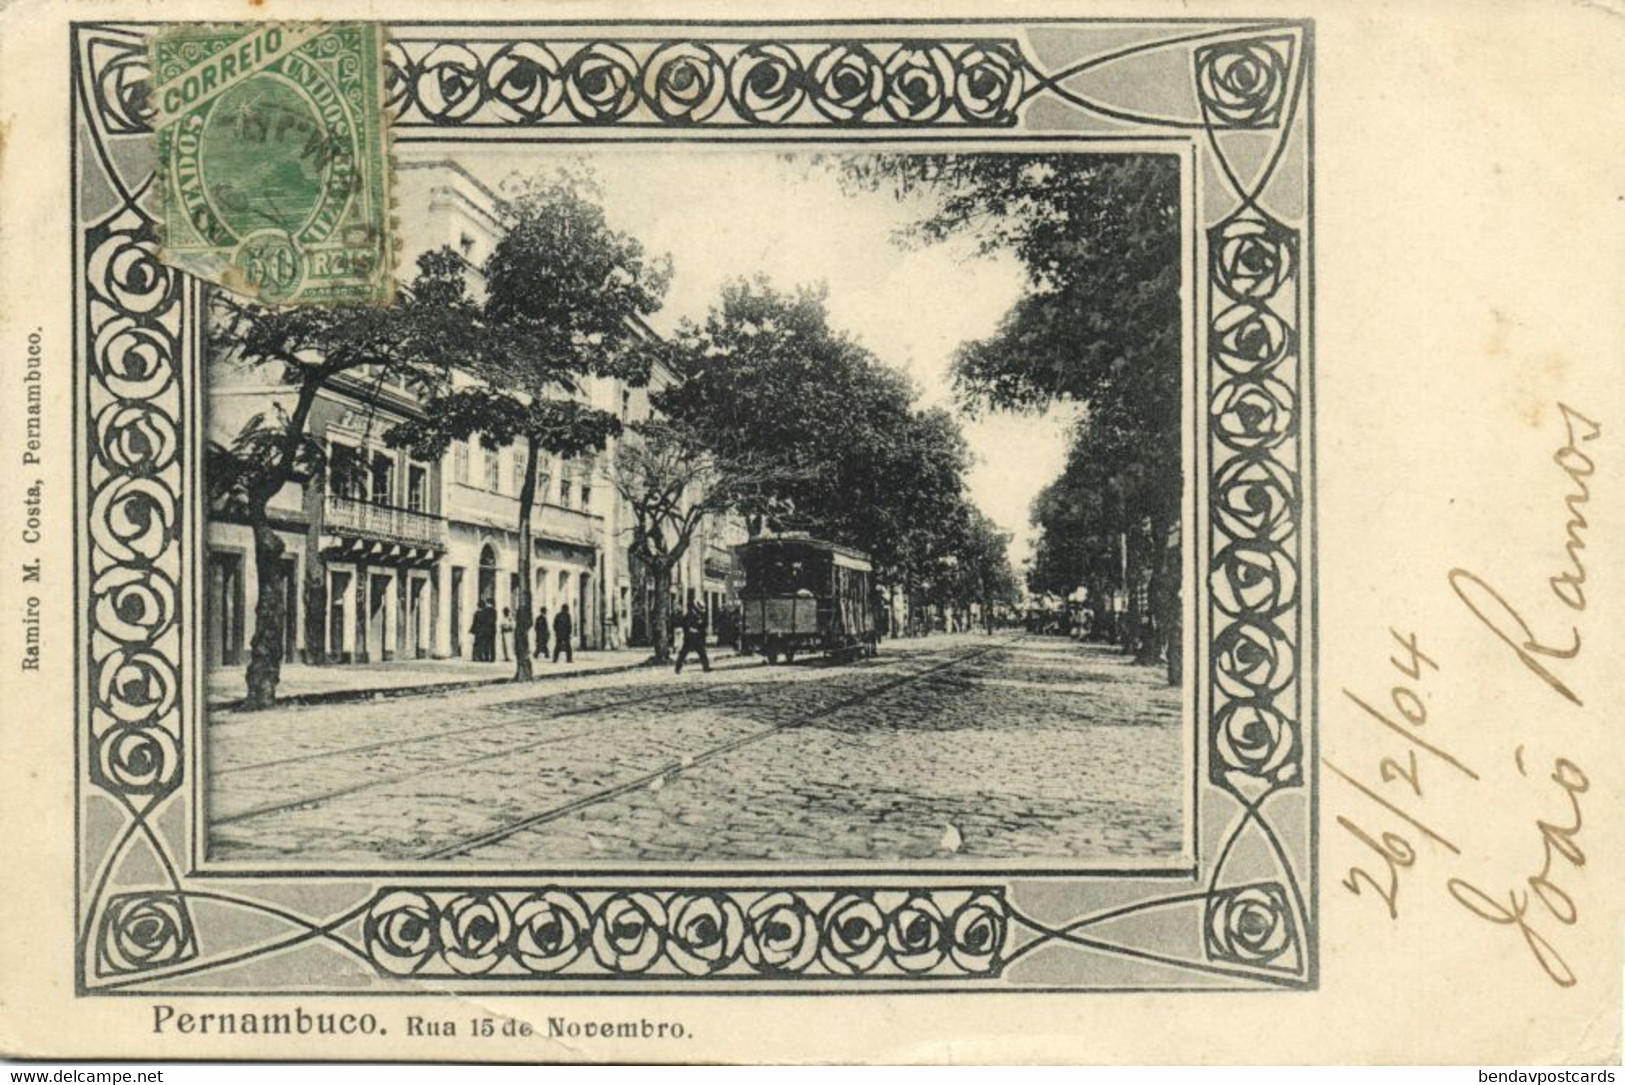 Brazil, RECIFE, Pernambuco, Rua 15 De Novembro, Tram (1904) R.M. Costa Postcard - Recife